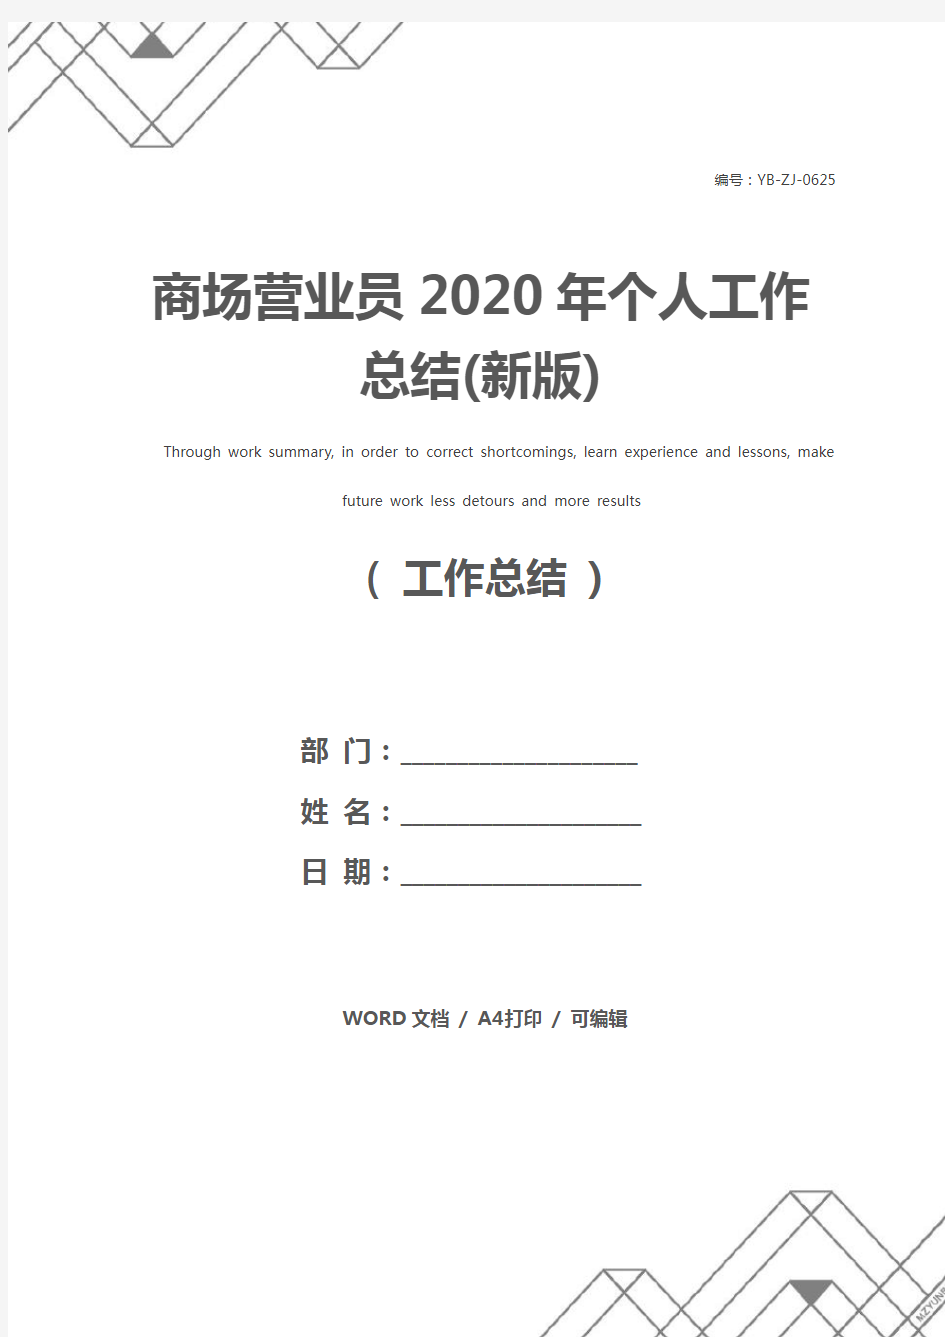 商场营业员2020年个人工作总结(新版)